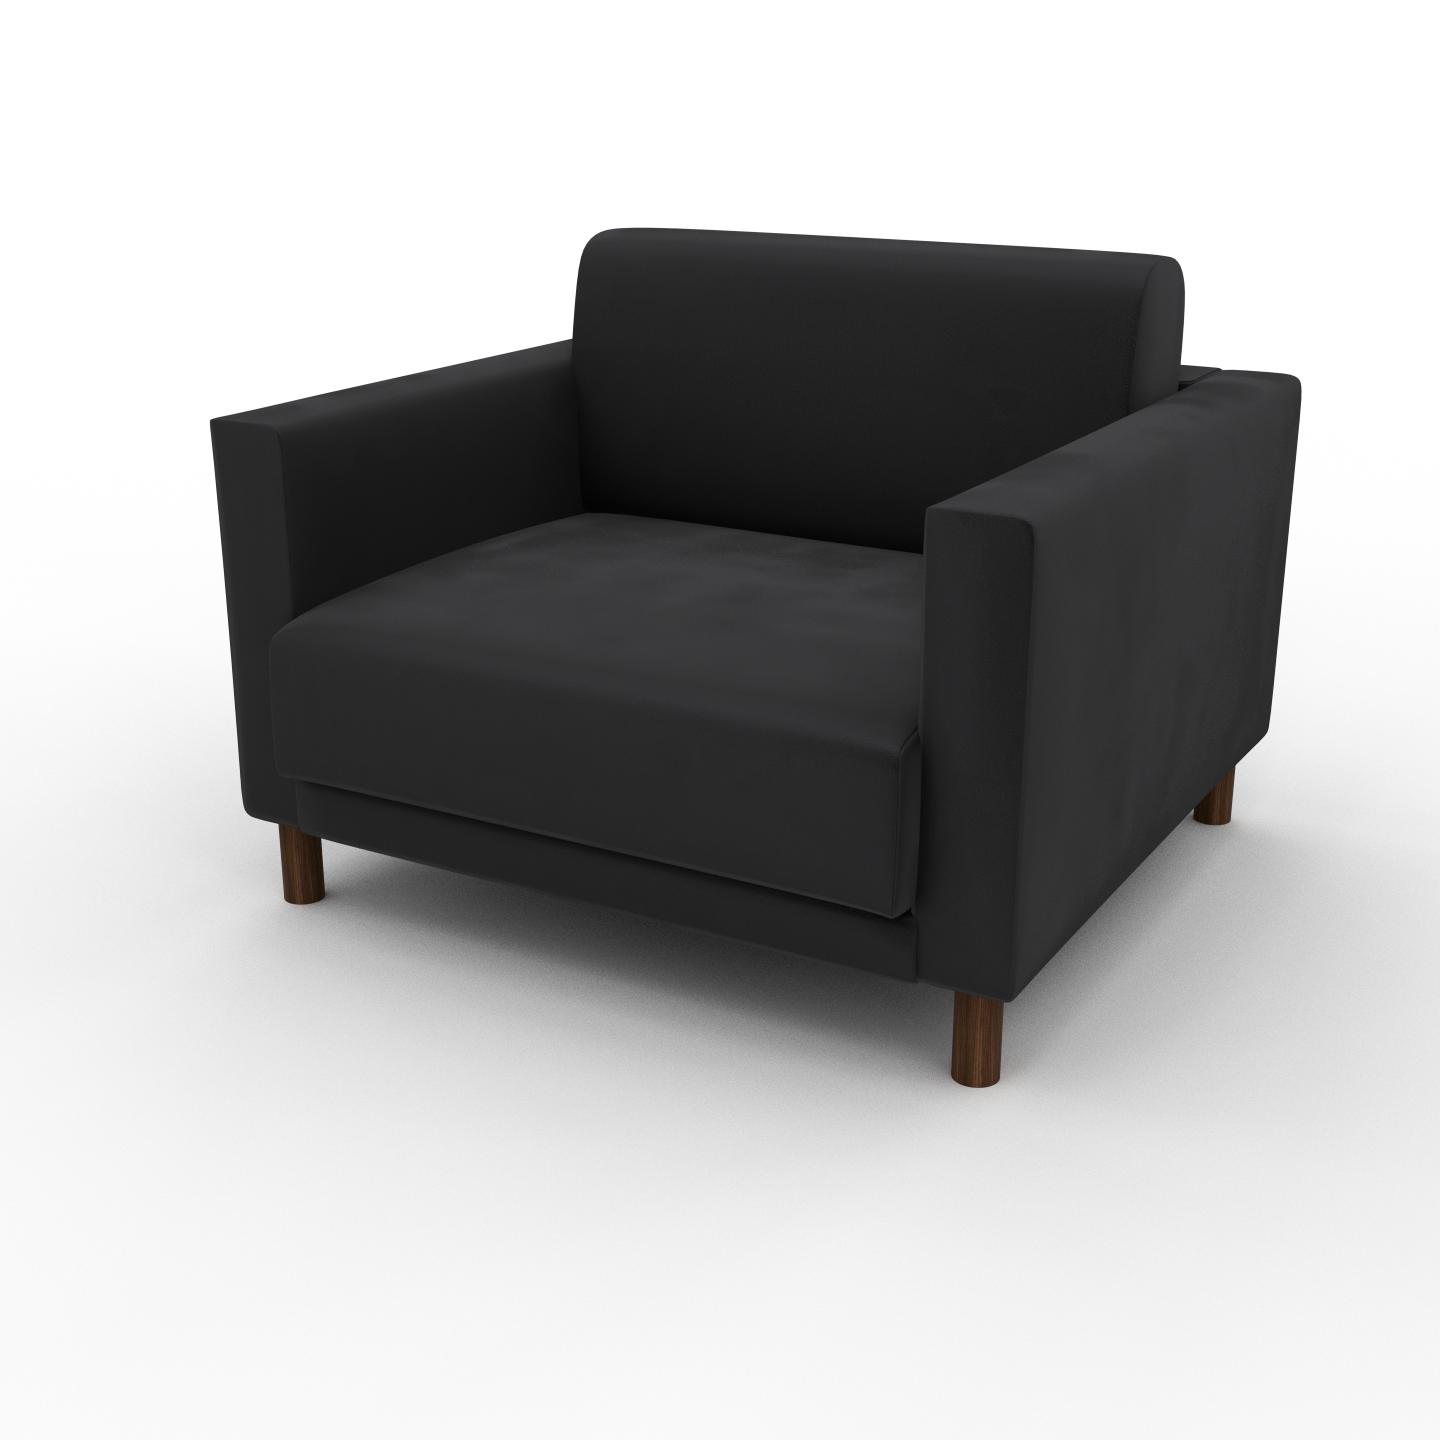 MYCS Sessel Samt Steingrau - Eleganter Sessel: Hochwertige Qualität, einzigartiges Design - 104 x 75 x 98 cm, Individuell konfigurierbar